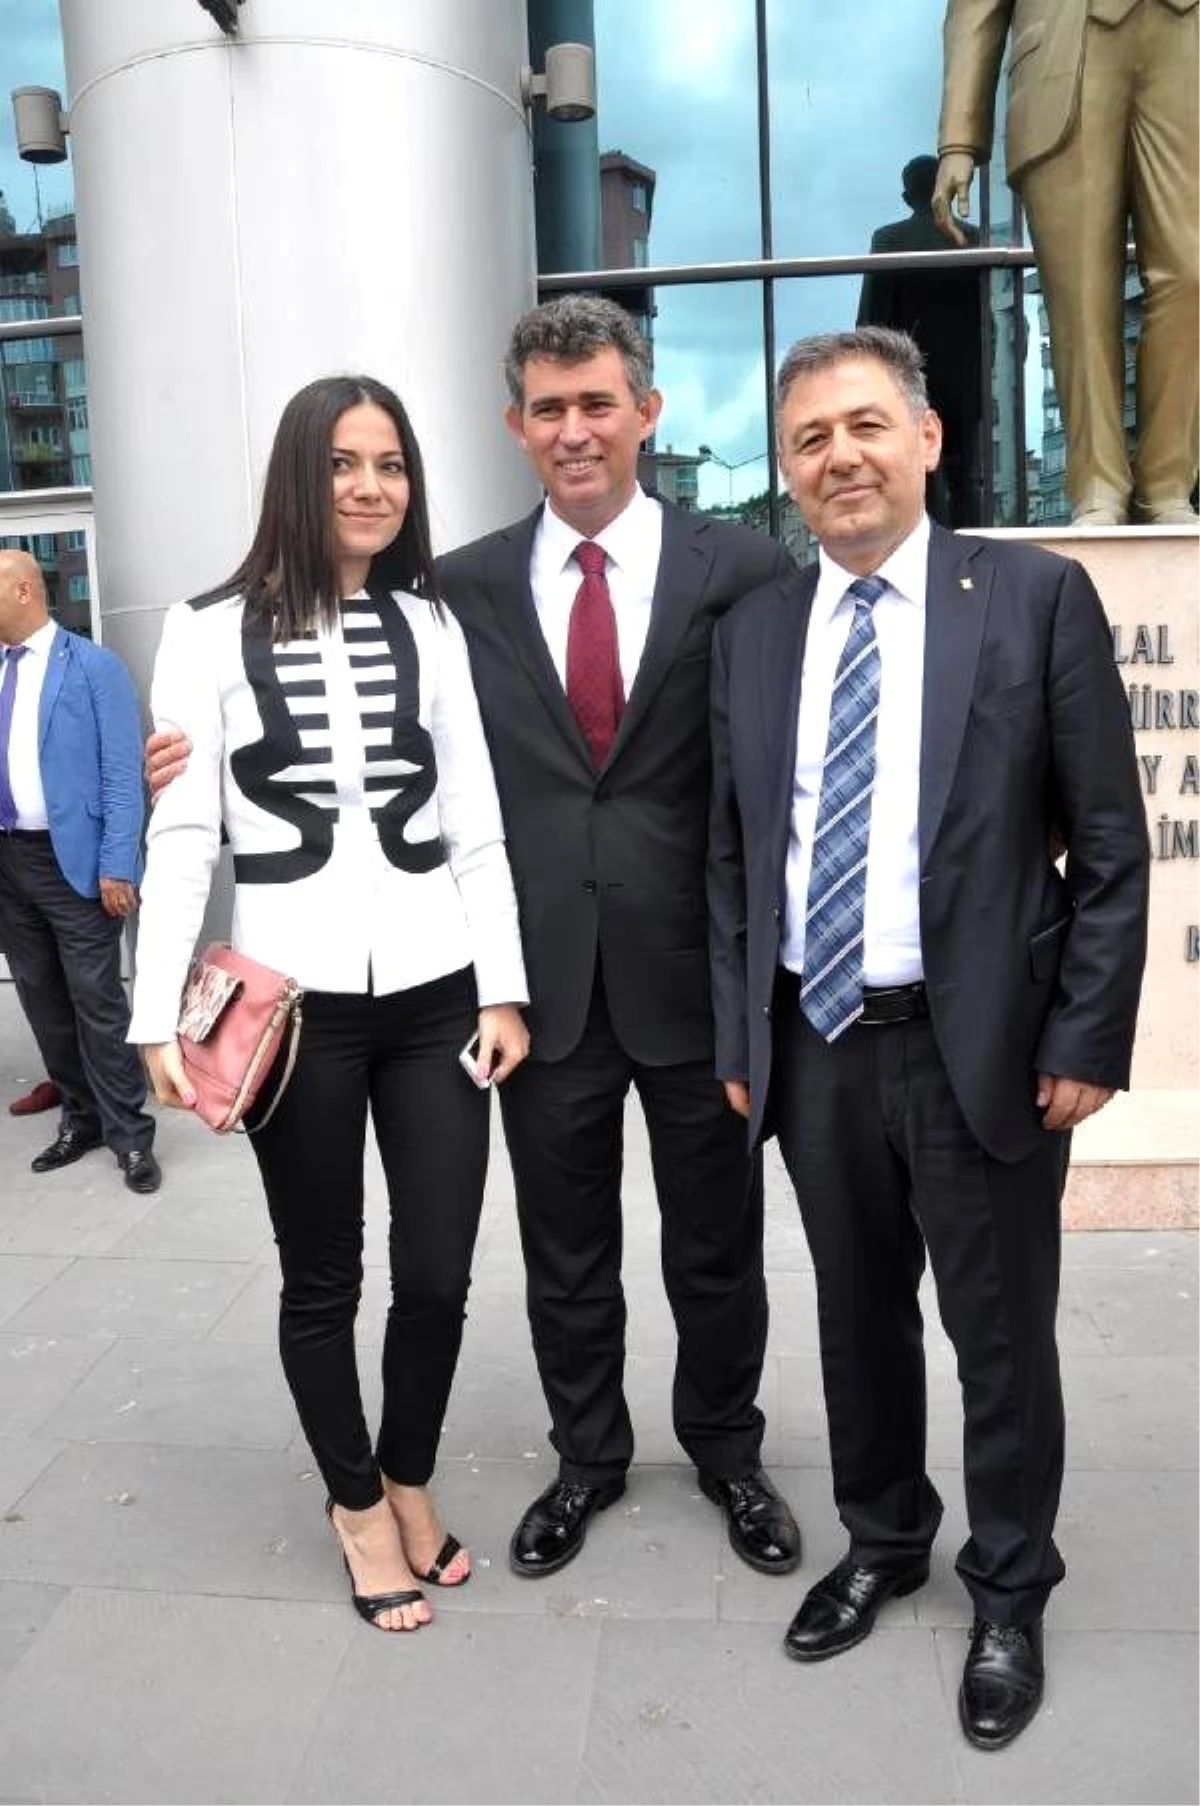 Eskişehir Baro Başkanı ile Avukat Beraat Etti